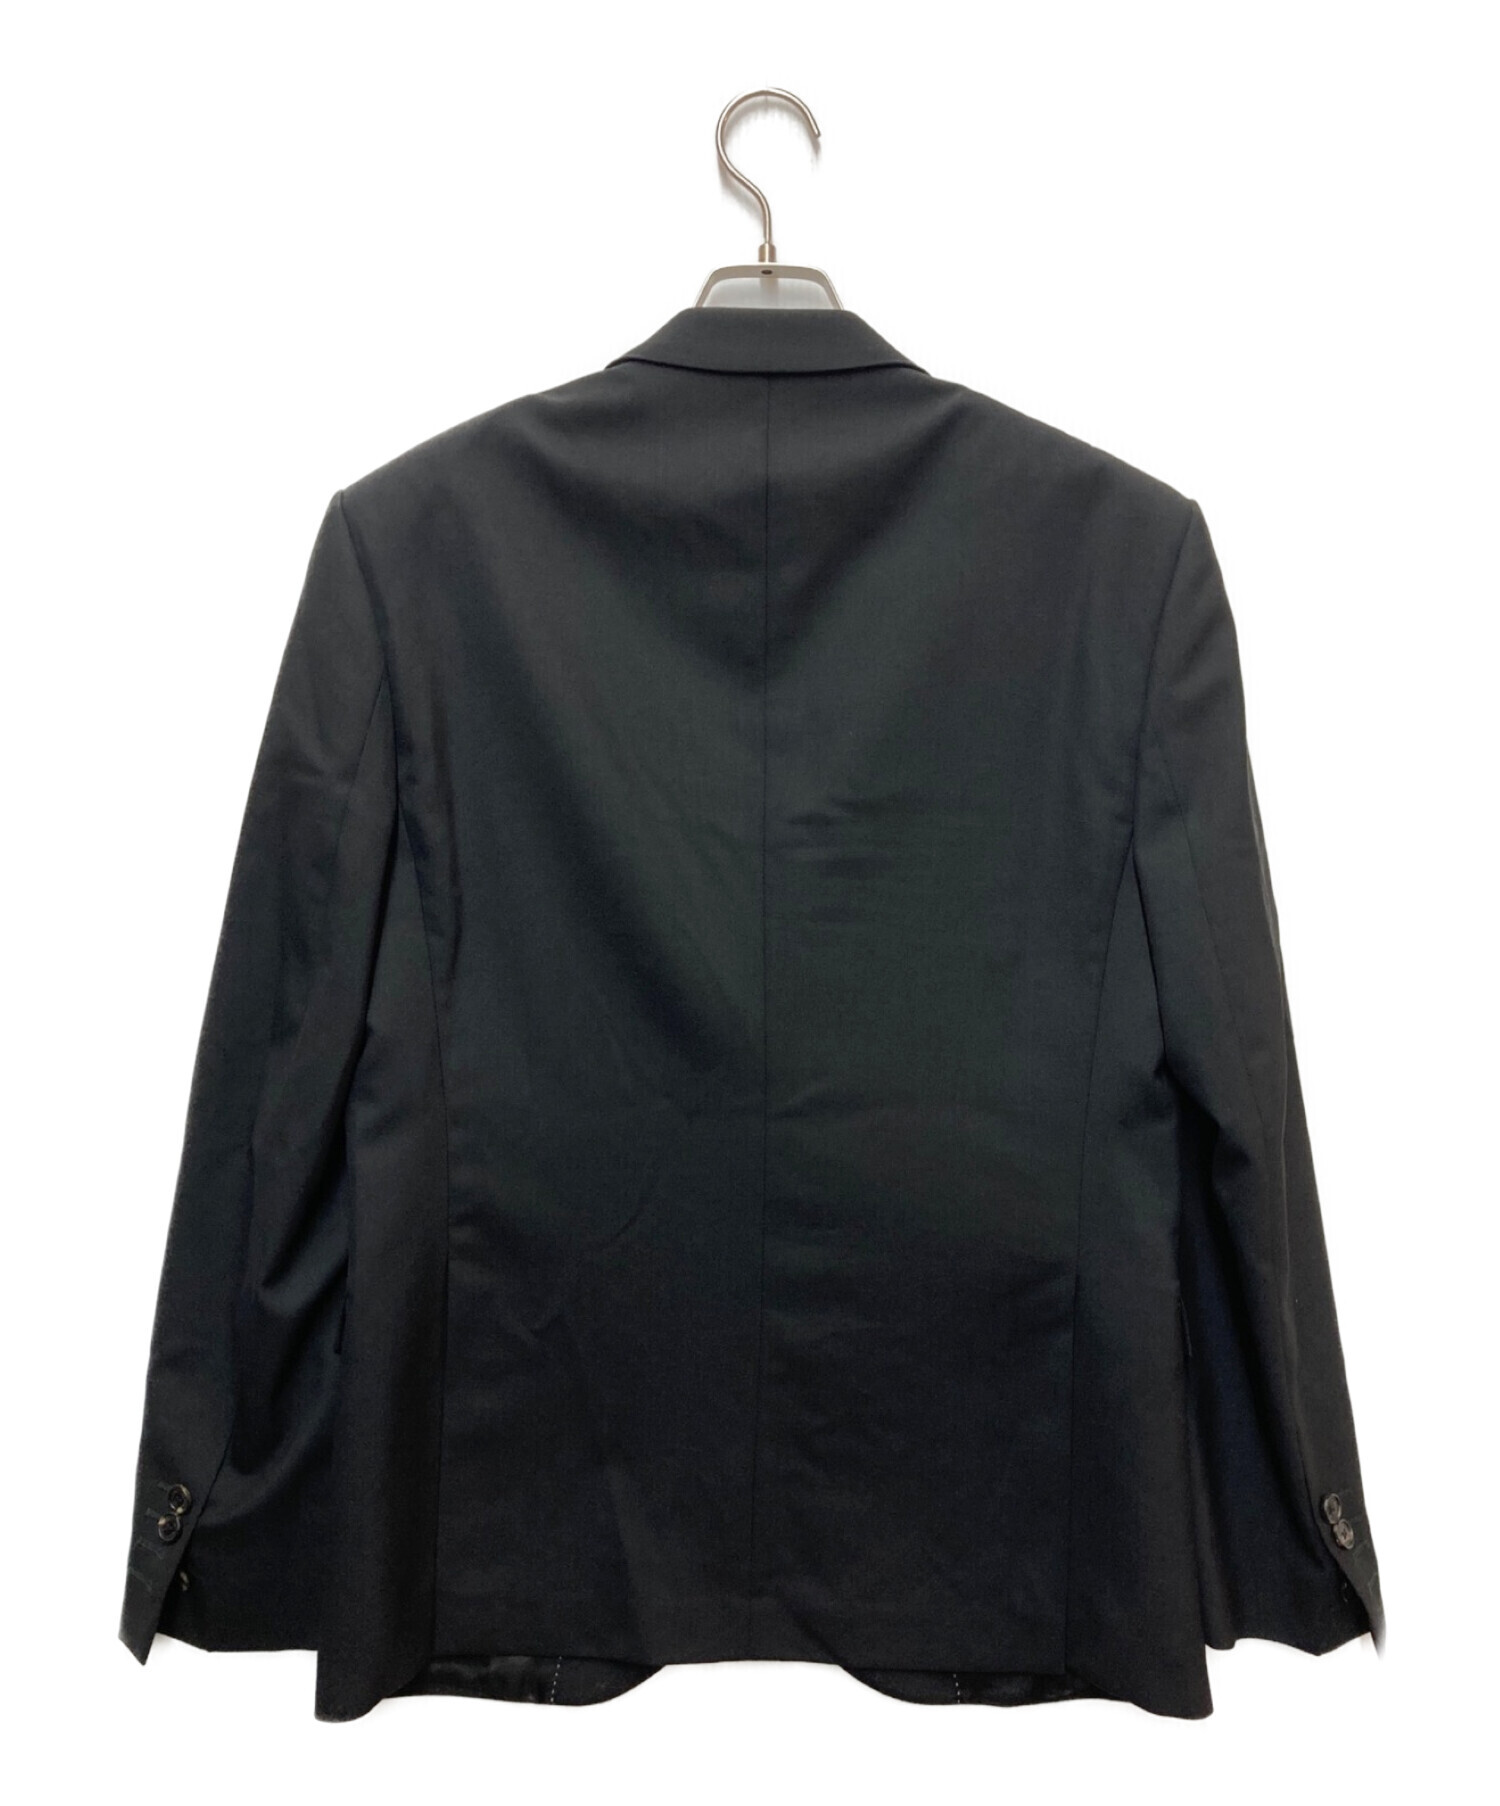 新品タグ付✨ニールバレット テーラードジャケット 上着 2B フォーマル 黒